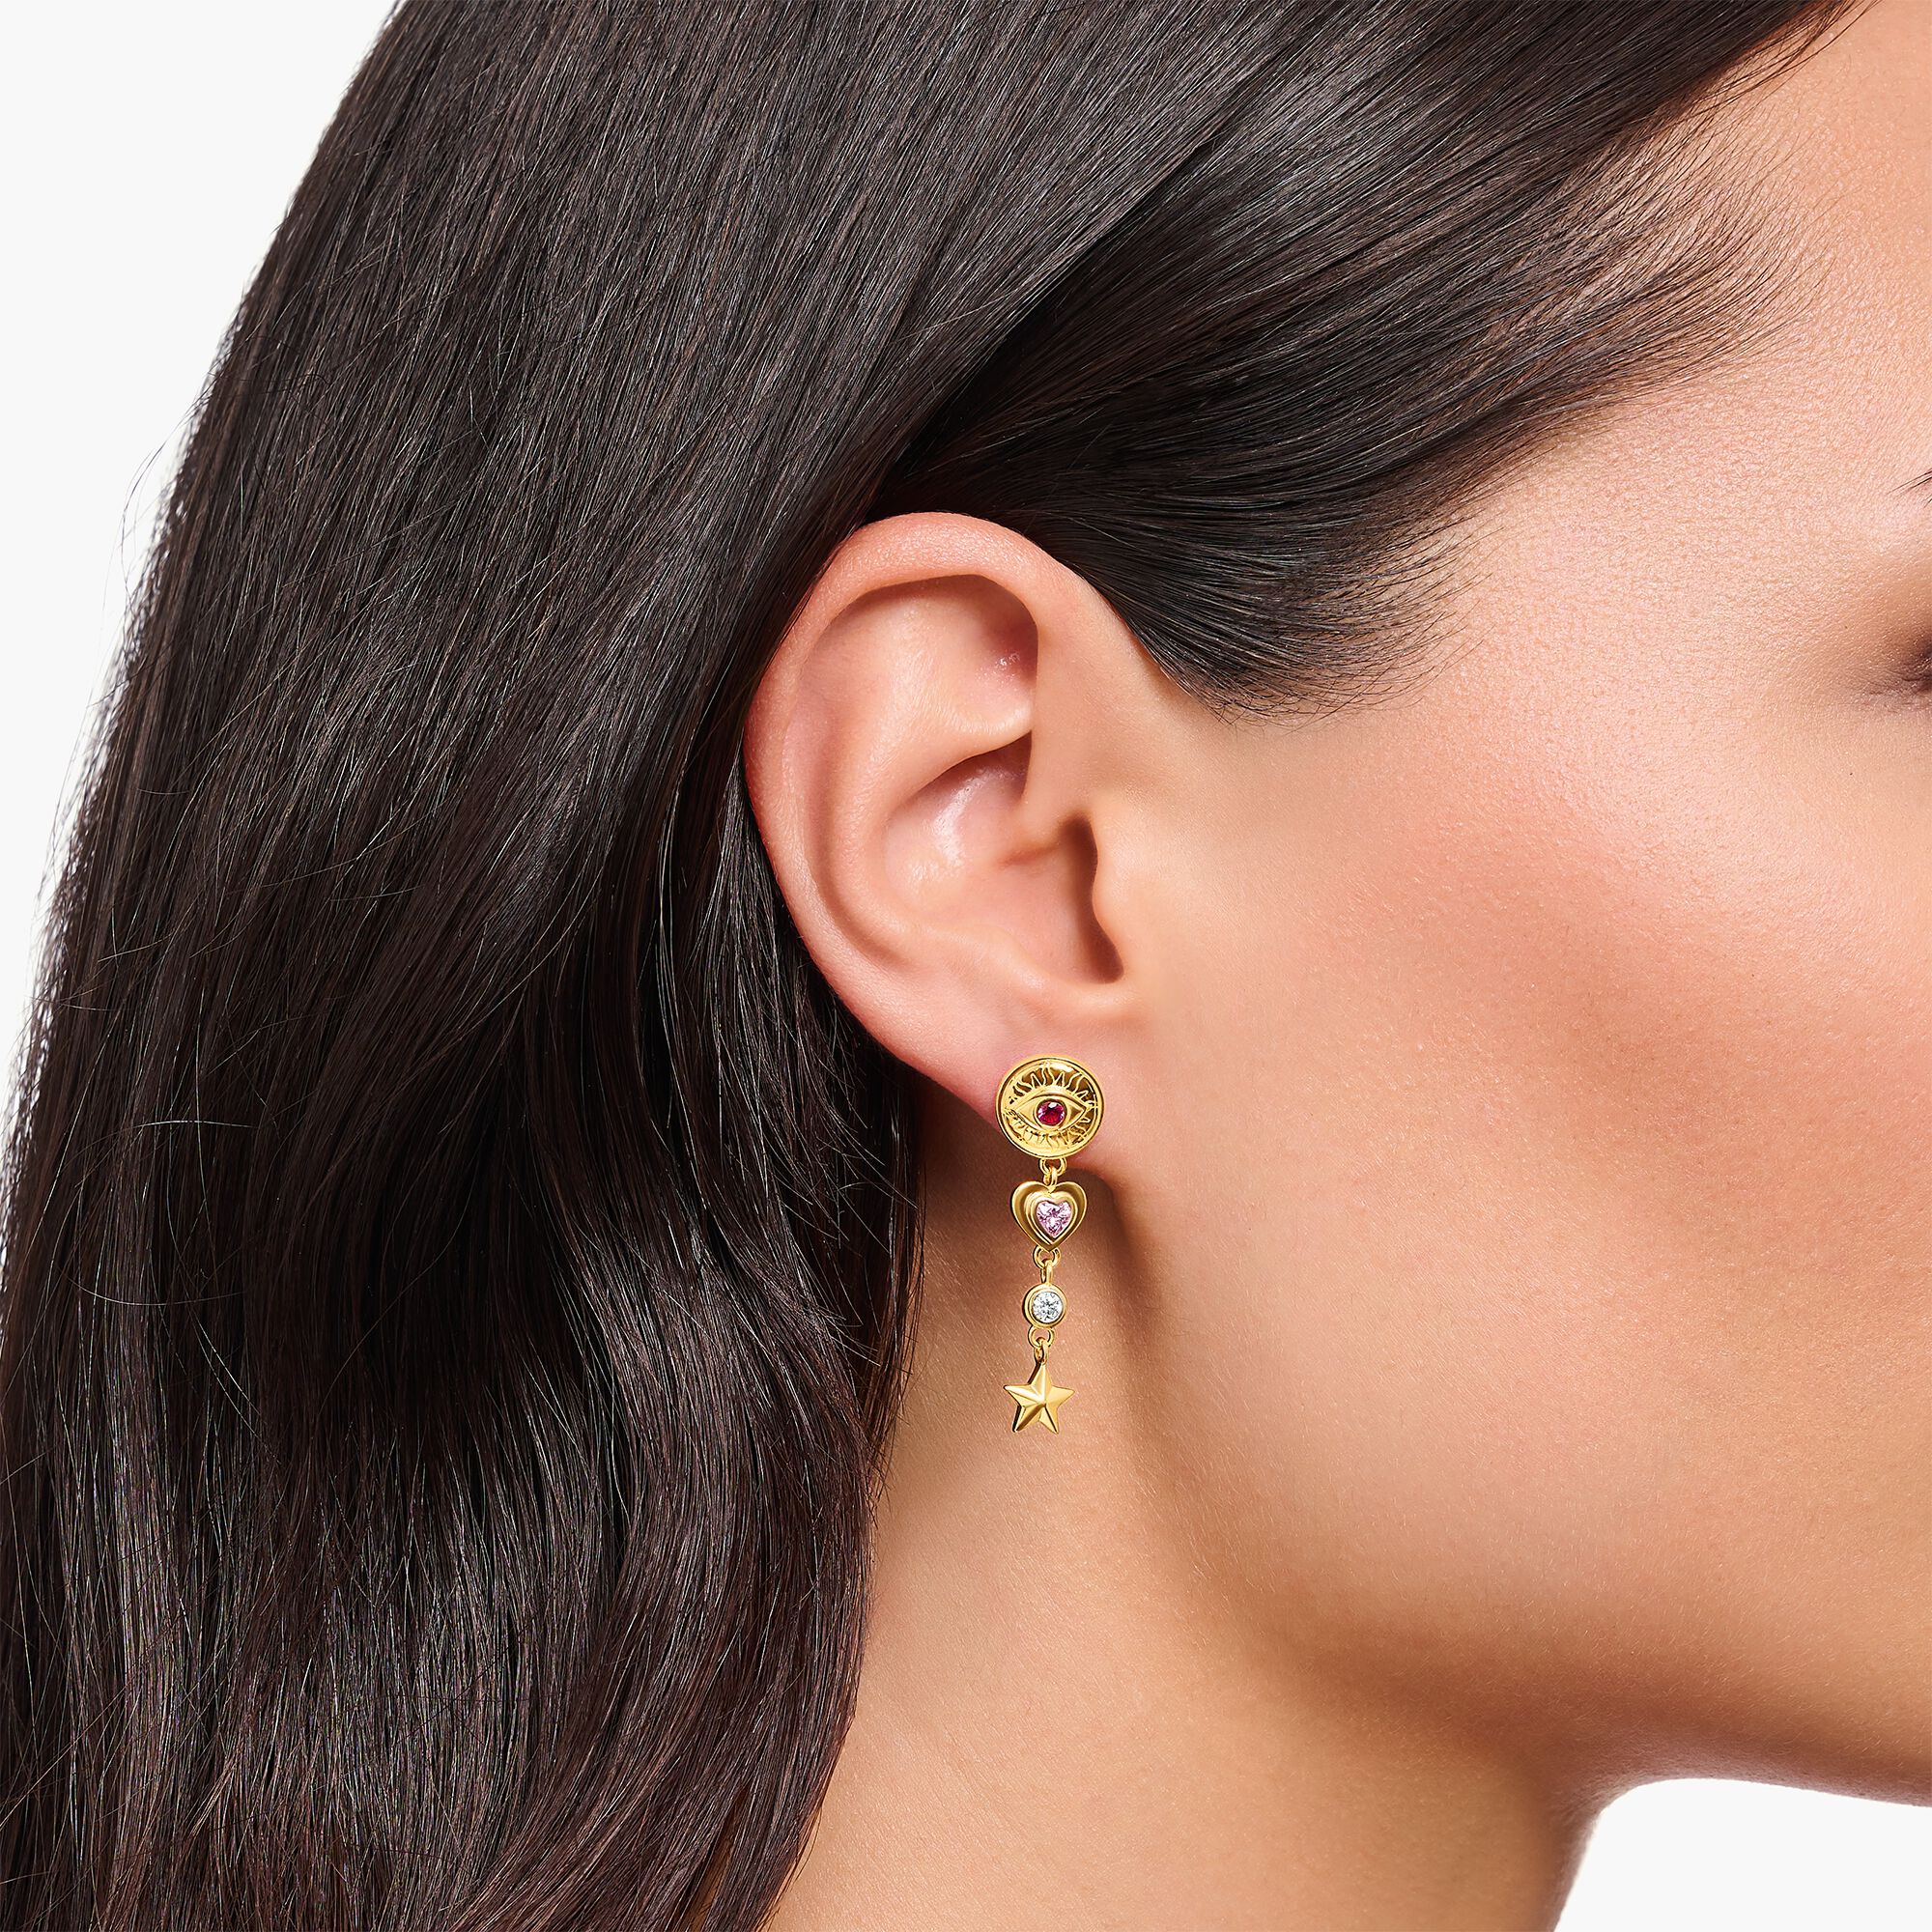 18K Gold Plated Black Clover Earrings 2 Motifs Inspired